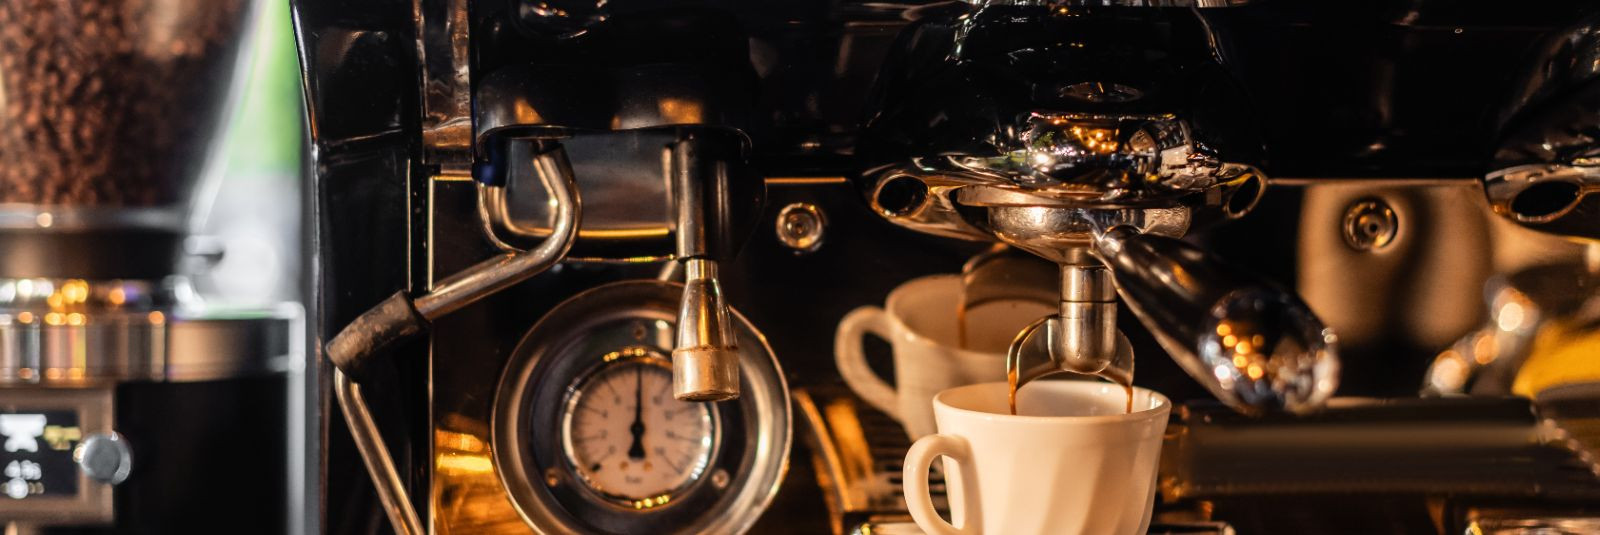 Kohvimasina regulaarne hooldus on oluline, et tagada masina töökindlus ja hea kohvi maitse. Kuidas aga hooldada oma kohvimasinat korrektselt?  Esiteks, puhasta 